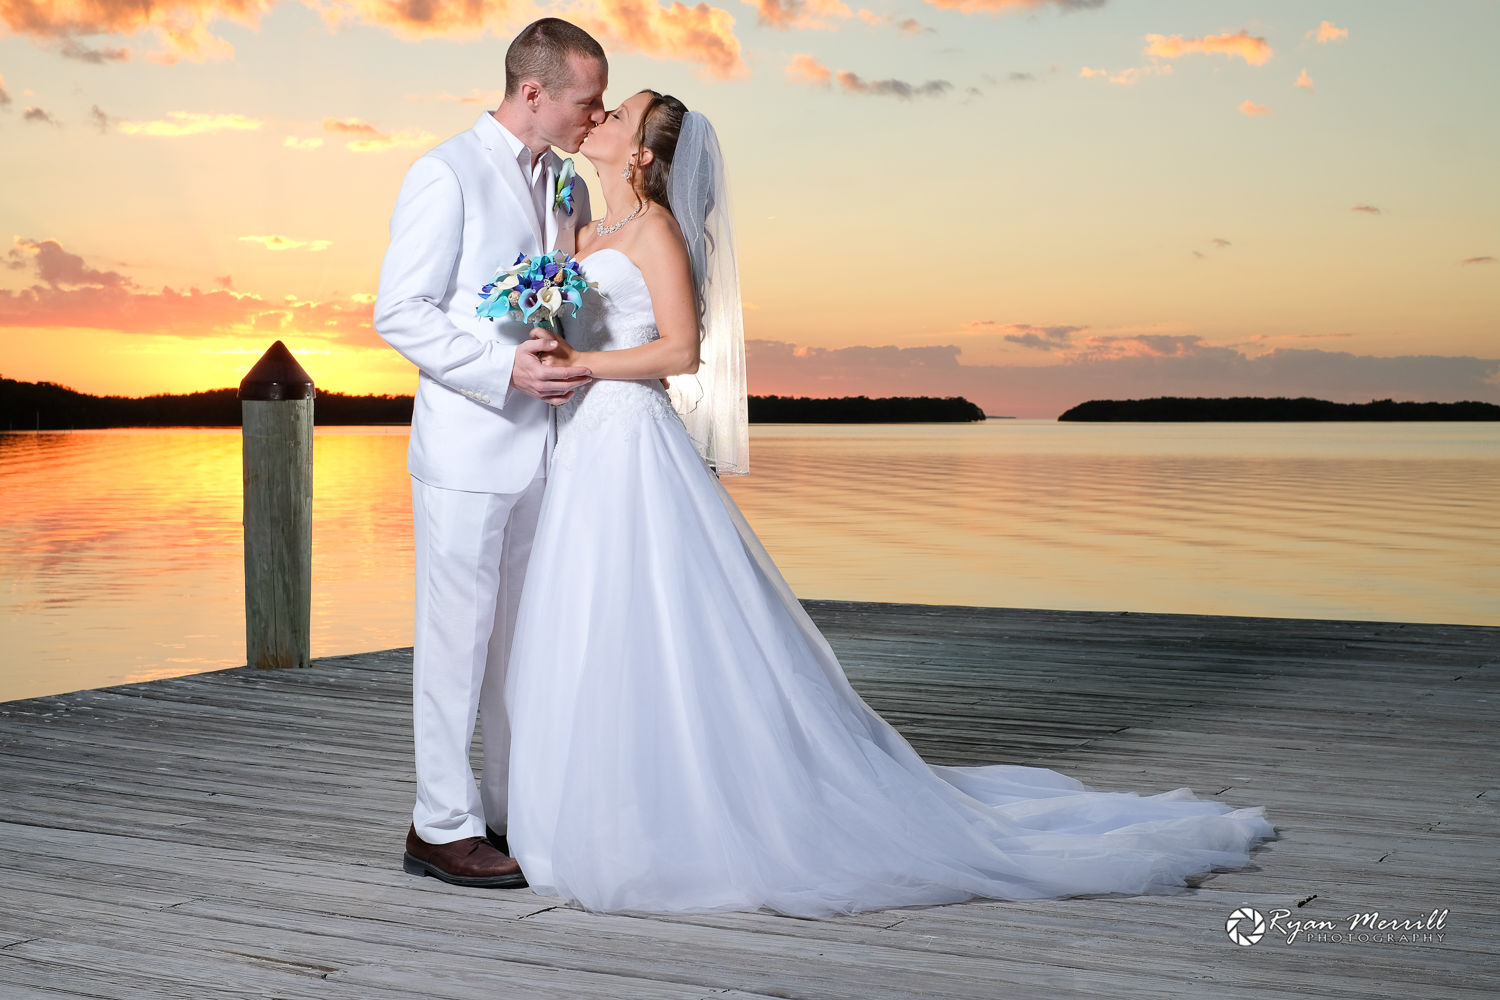 Pretty Sunset Beach Wedding Photo Ryan Merrill Photography